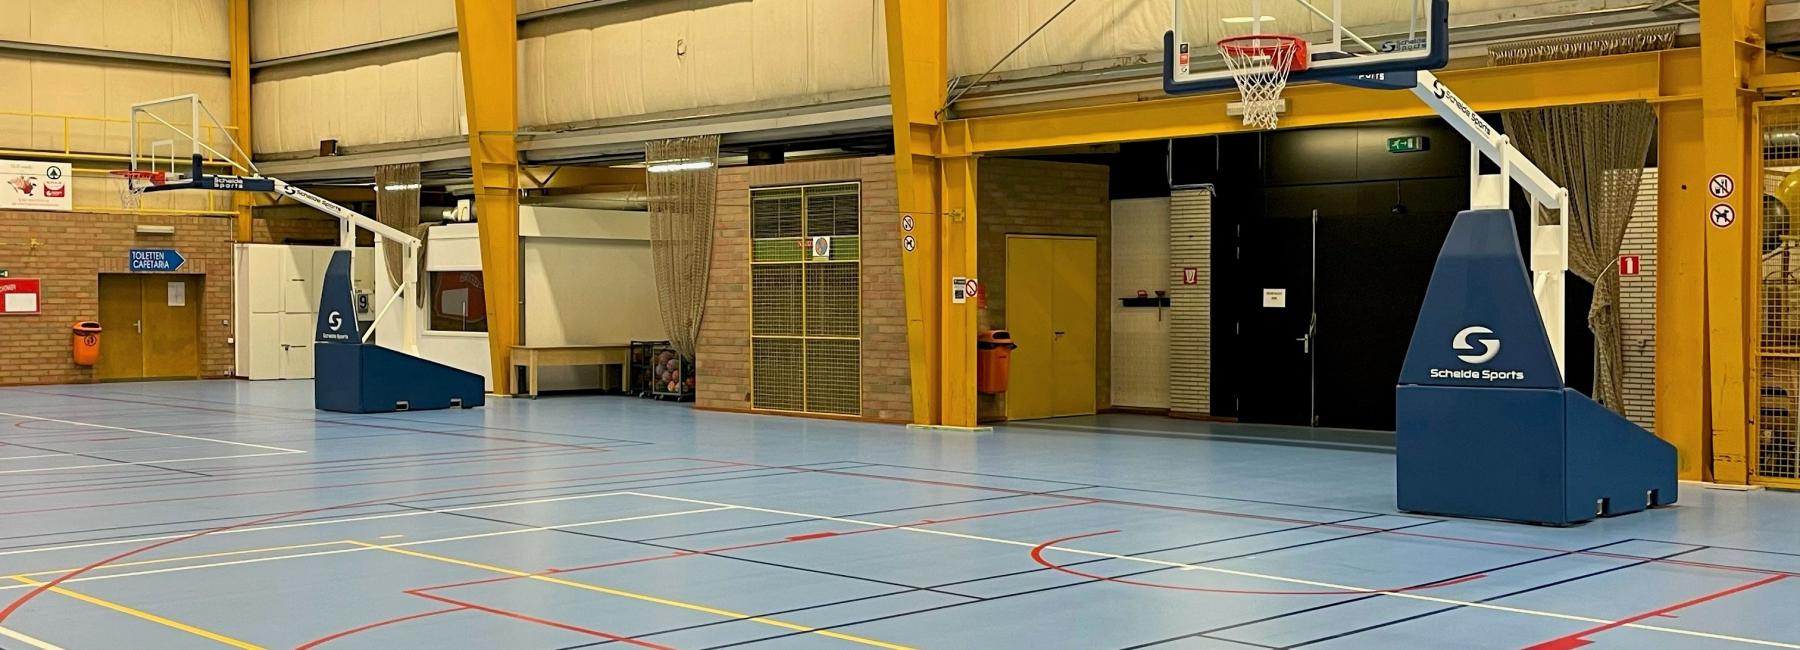 Sportcomplex De Gaverhal Deerlijk - Gerflor Benelux